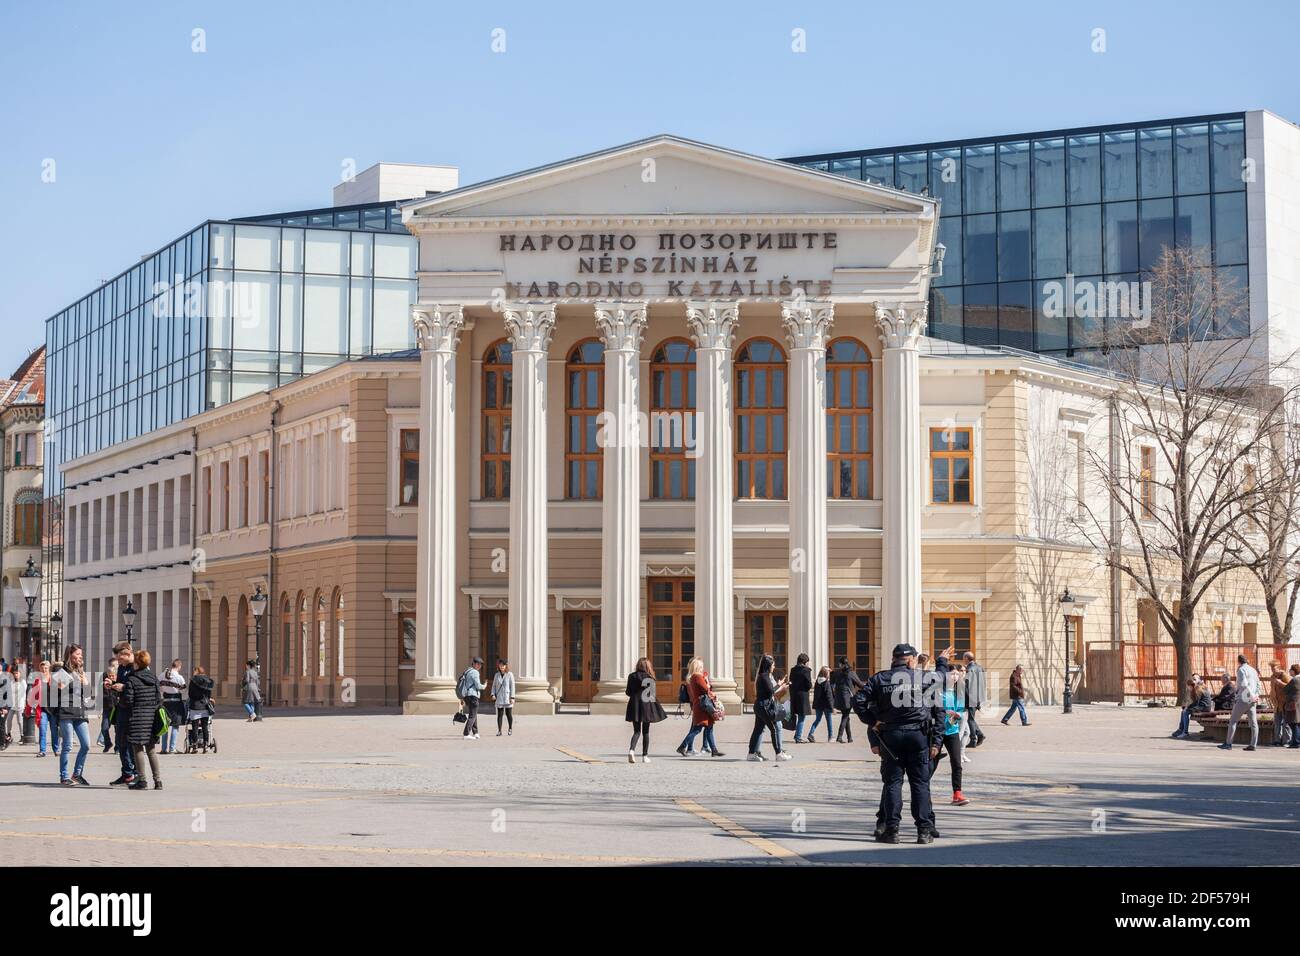 SUBOTICA, SERBIEN - 29. MÄRZ 2019: Fassade des Nationaltheaters von Subotica, mit Erwähnung Nationaltheater übersetzt in Serbisch, Kroatisch & Hungari Stockfoto